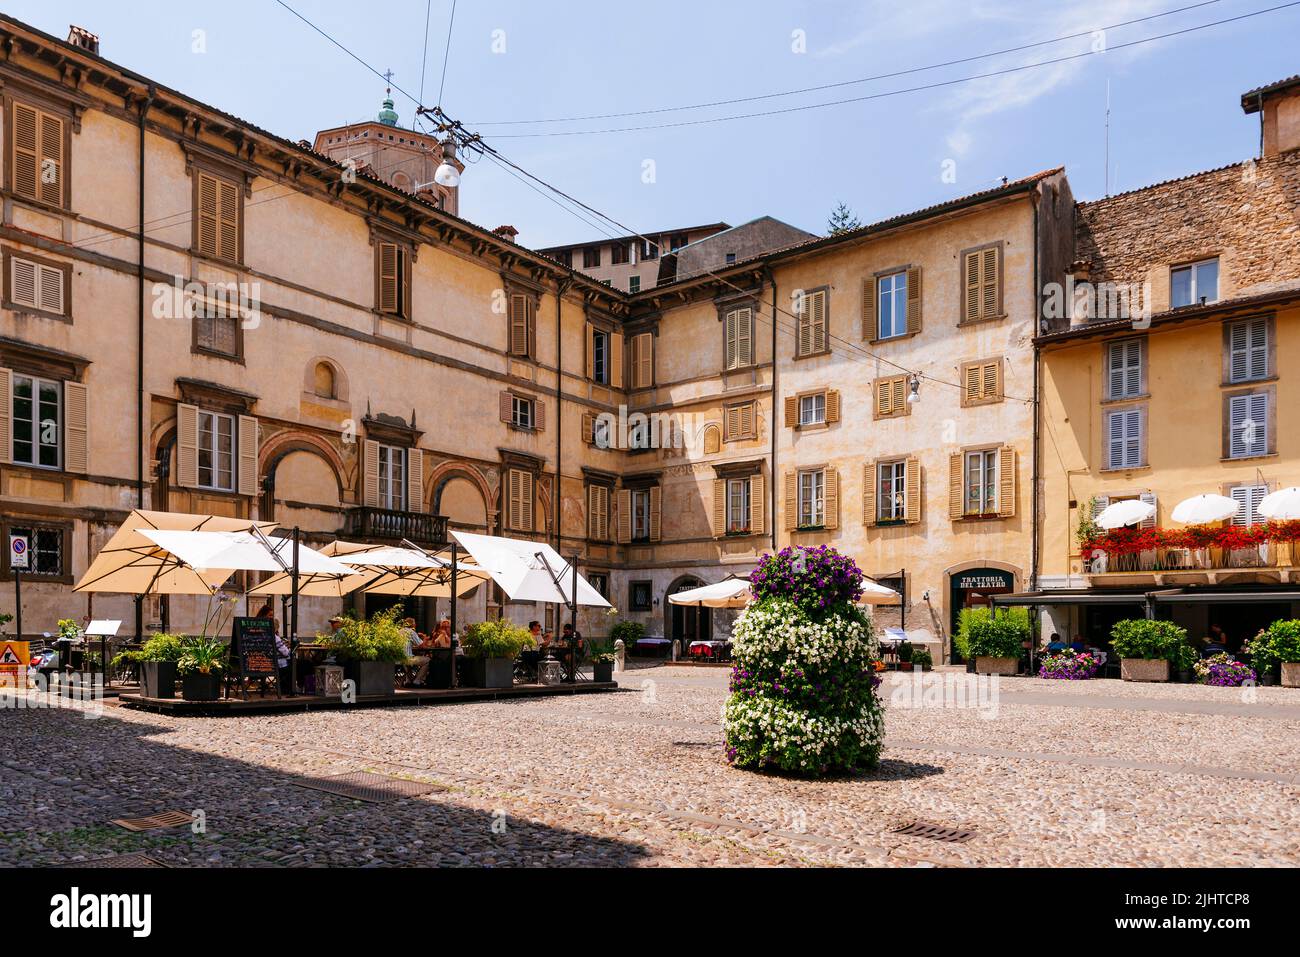 Le Palazzo Roncalli est situé sur la Piazza Mascheroni, dans la partie supérieure de la ville de Bergame, à l'intérieur de la citadelle et a été construit par la volonté de la République Banque D'Images